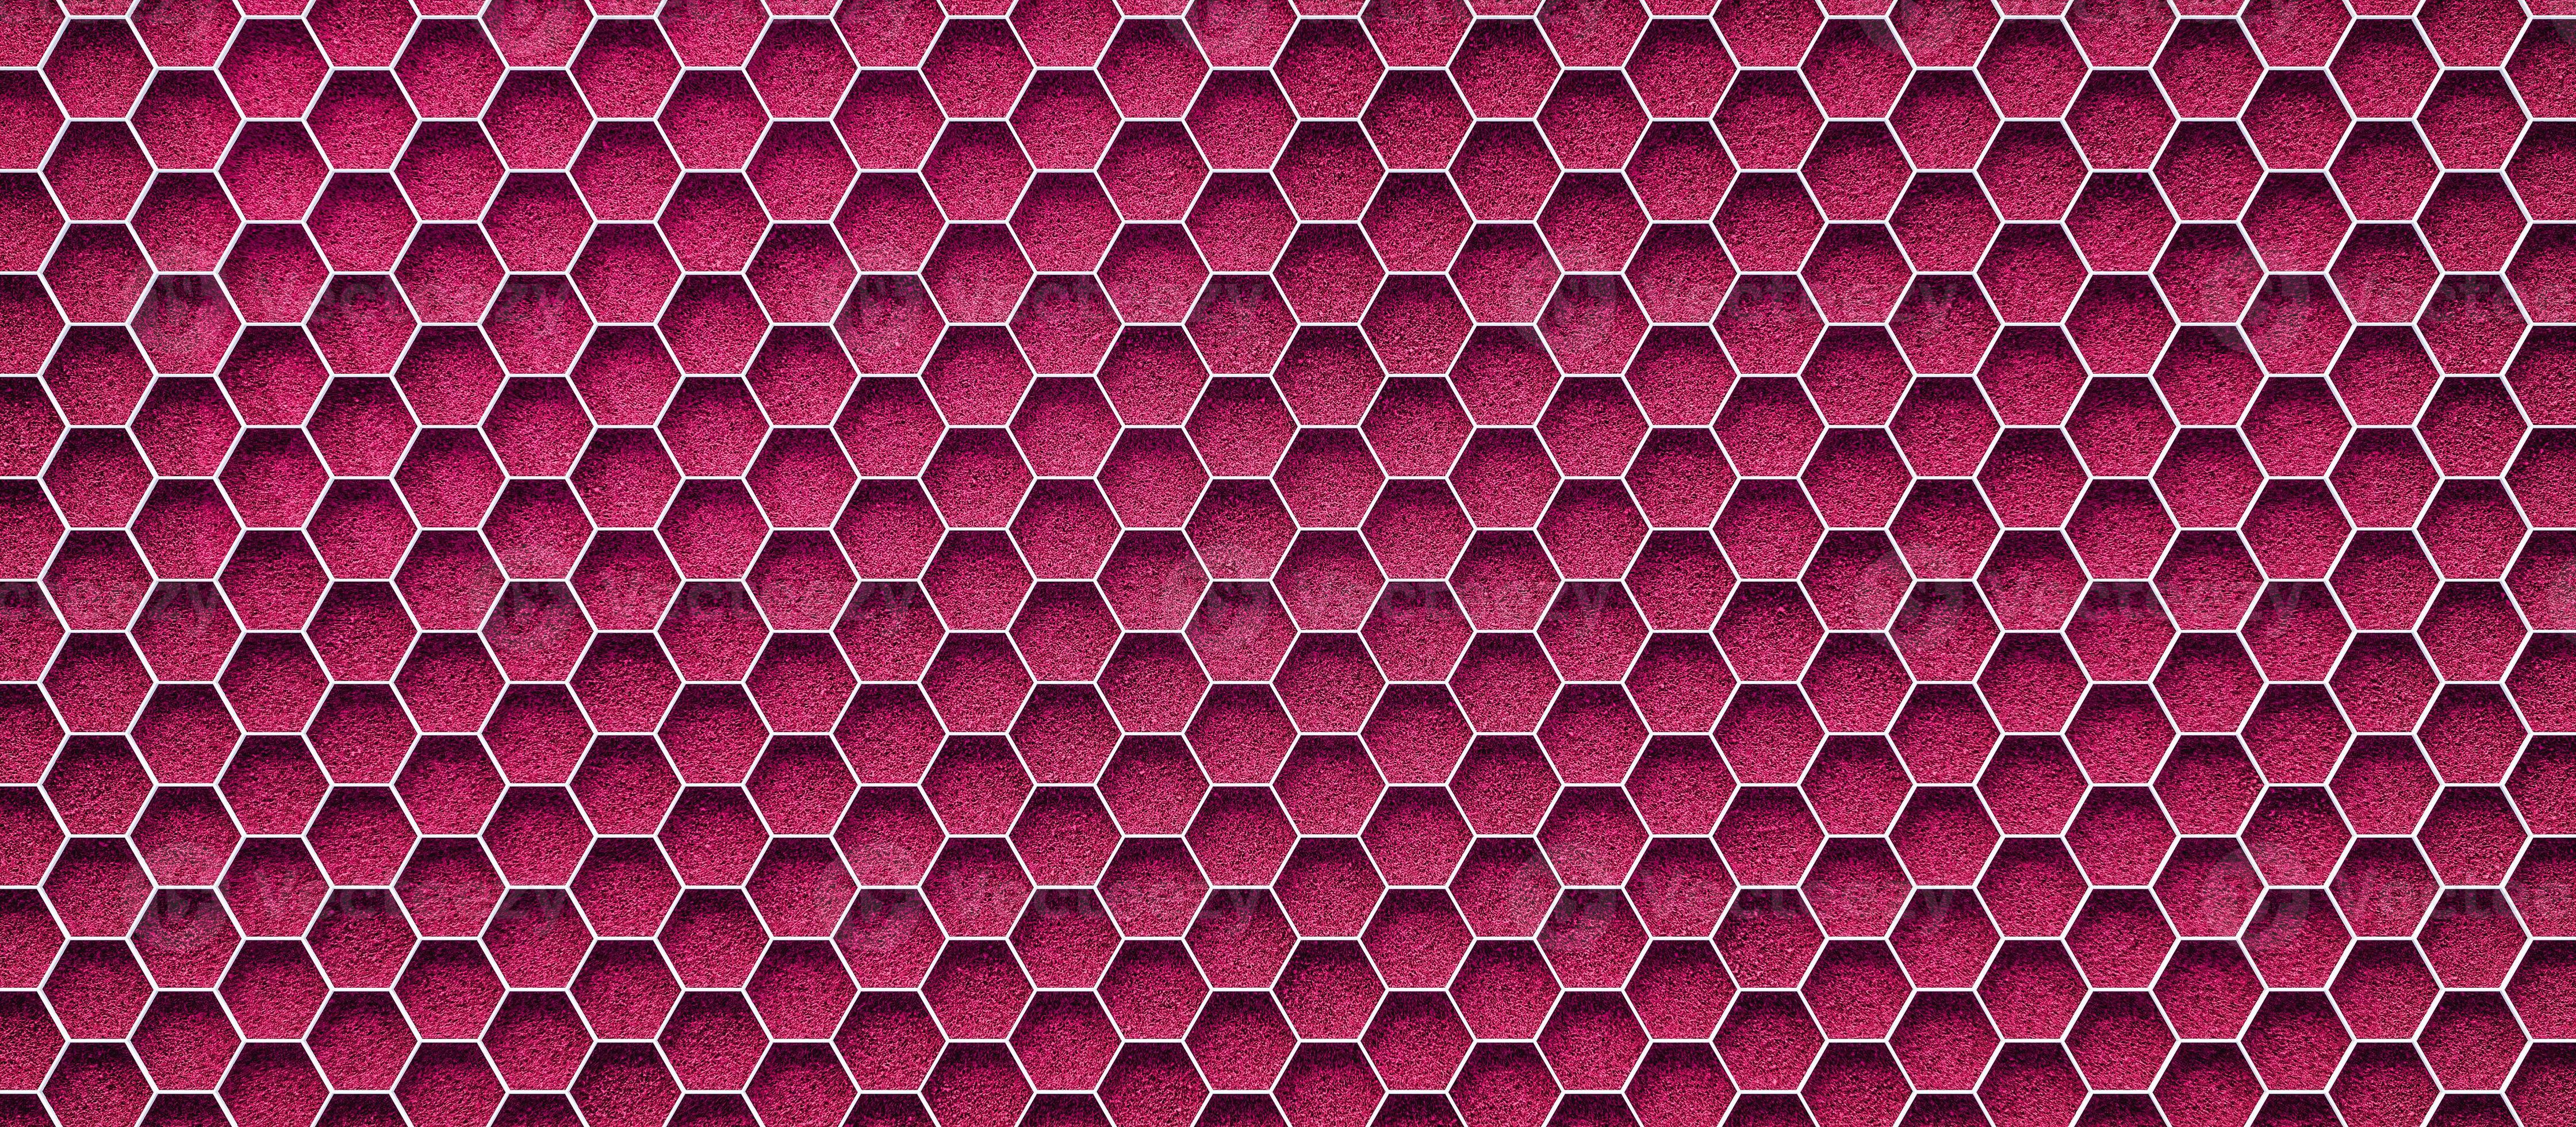 Hình nền 3D Gucci hồng với nền cỏ hồng sân bóng đá là một sự kết hợp độc đáo và thú vị. Với độ sáng tăng cao, từ màu sắc tới họa tiết, bạn sẽ cảm thấy tươi mới và sẵn sàng cho mọi thách thức. Hãy bấm xem ngay để trải nghiệm sự đa dạng và sang trọng của Gucci.